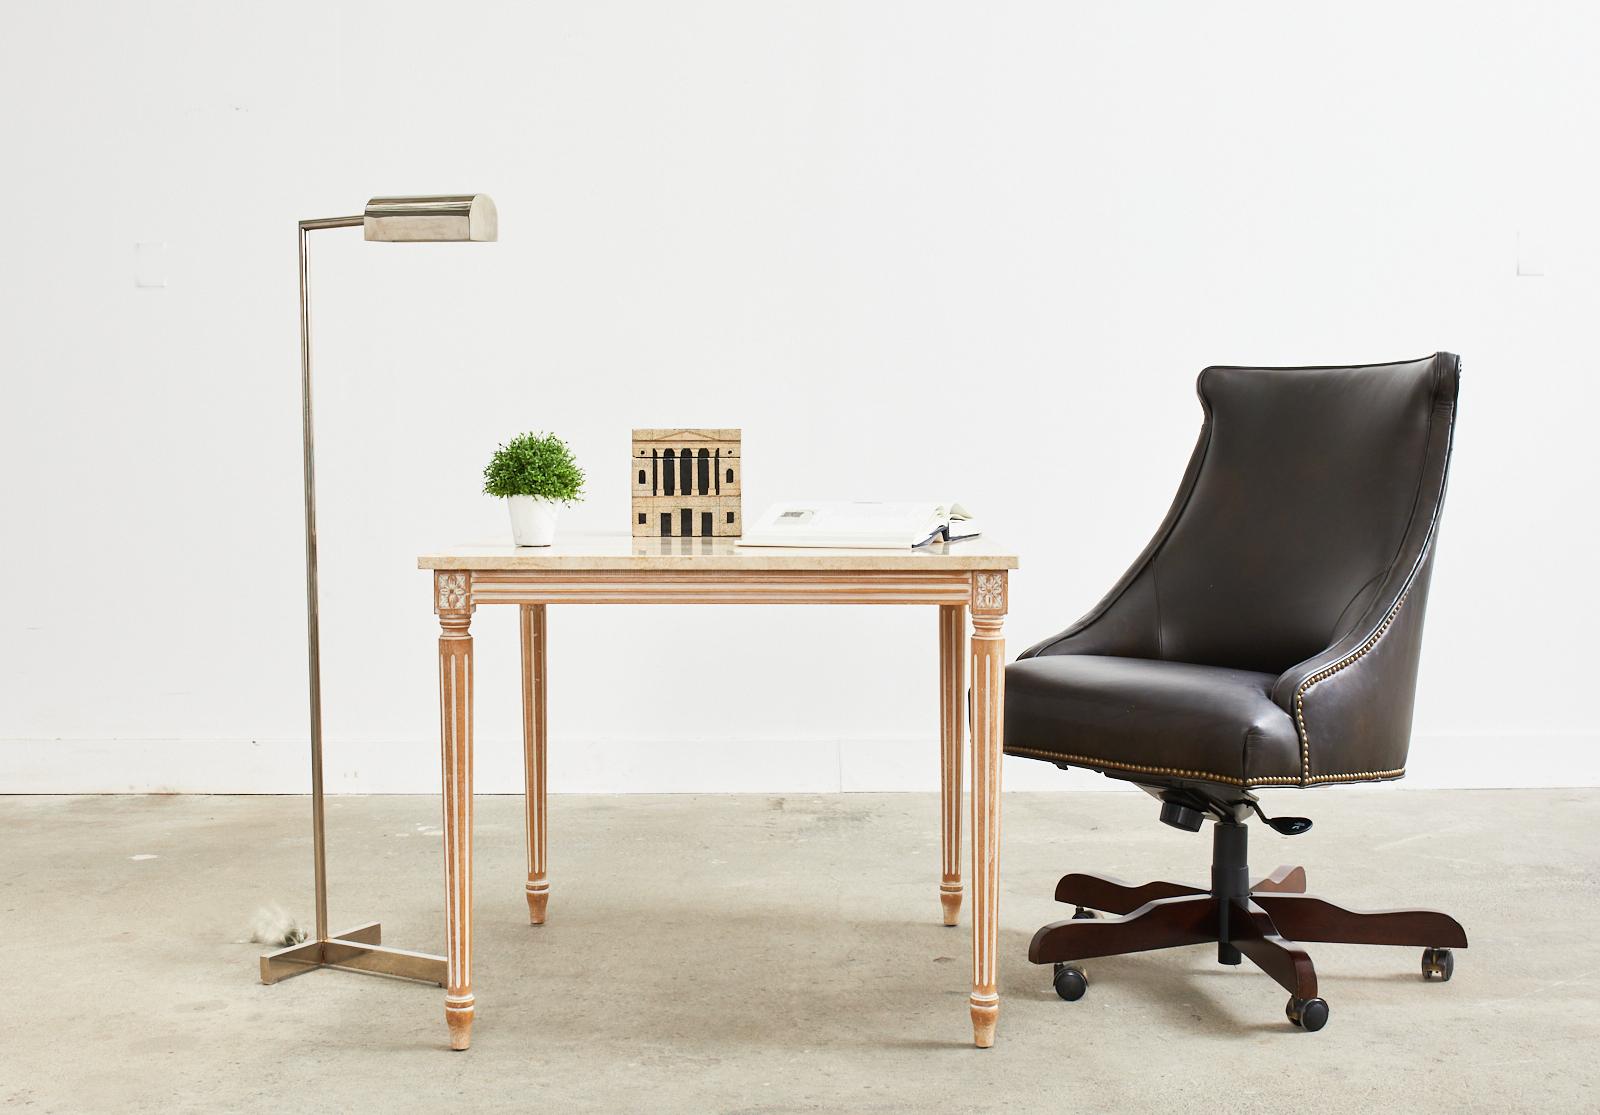 Stattlicher Bürodrehstuhl aus Leder, hergestellt von Century Furniture. Der Stuhl hat einen schlanken, gondelförmigen Rahmen, der mit dunklem, espressofarbenem Leder bezogen und mit Messingnagelköpfen im Regency-Stil eingefasst ist. Der Stuhl ist